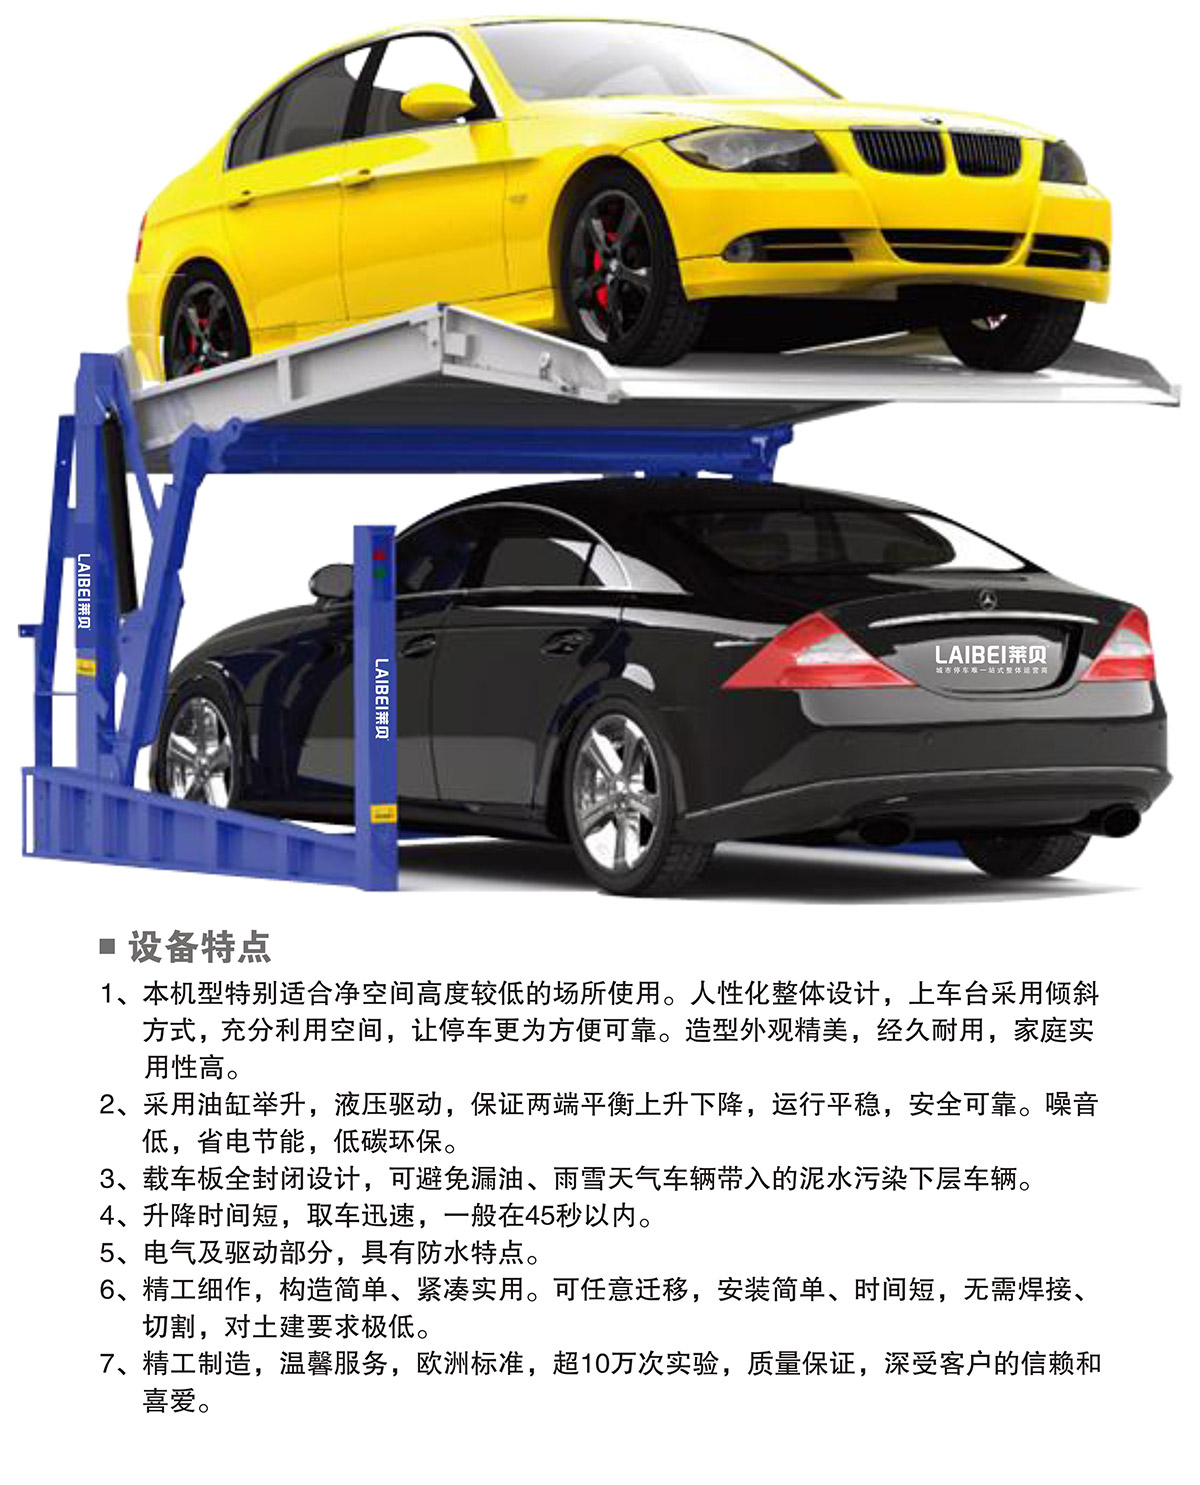 重庆PJS俯仰简易升降立体停车设备设备特点.jpg